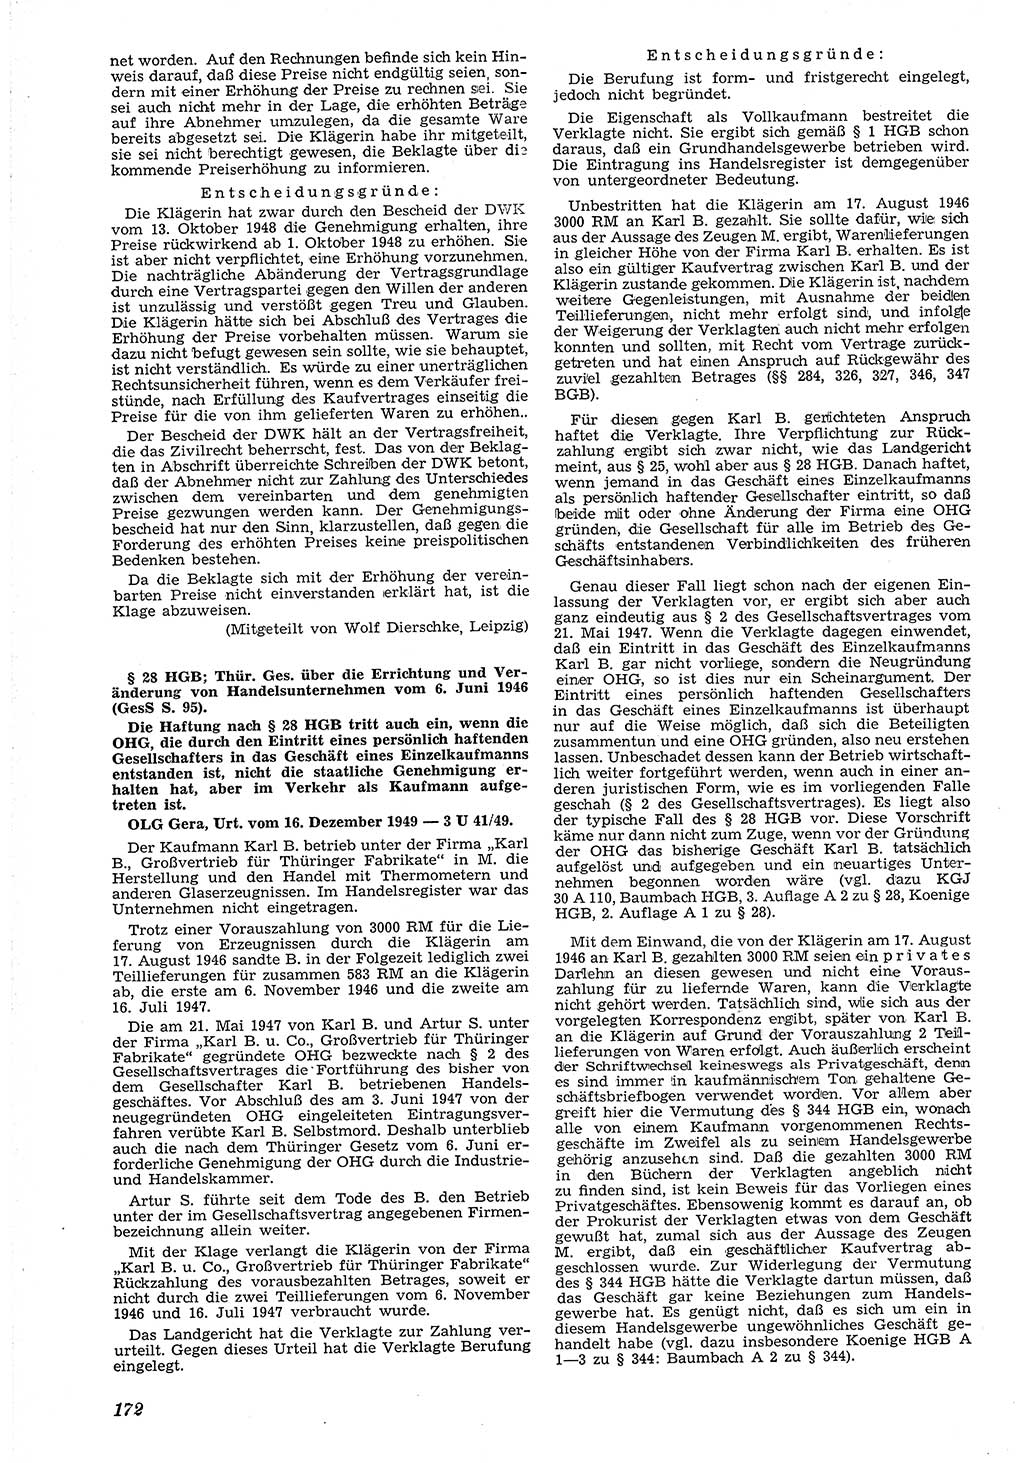 Neue Justiz (NJ), Zeitschrift für Recht und Rechtswissenschaft [Deutsche Demokratische Republik (DDR)], 4. Jahrgang 1950, Seite 172 (NJ DDR 1950, S. 172)